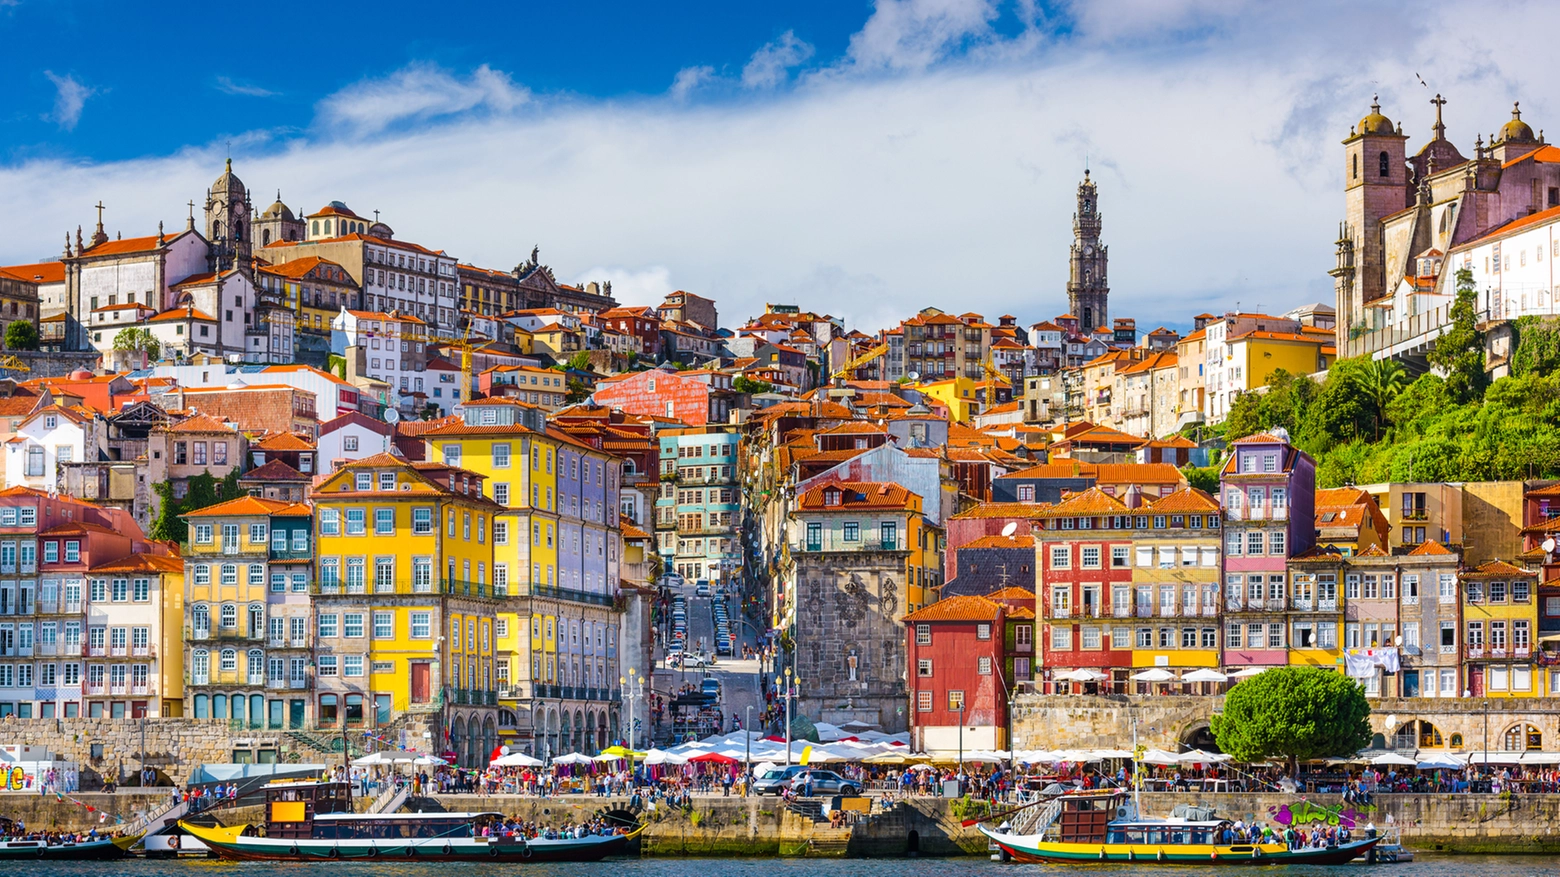 Crediti iStock - Vecchia città di Porto, Portogallo